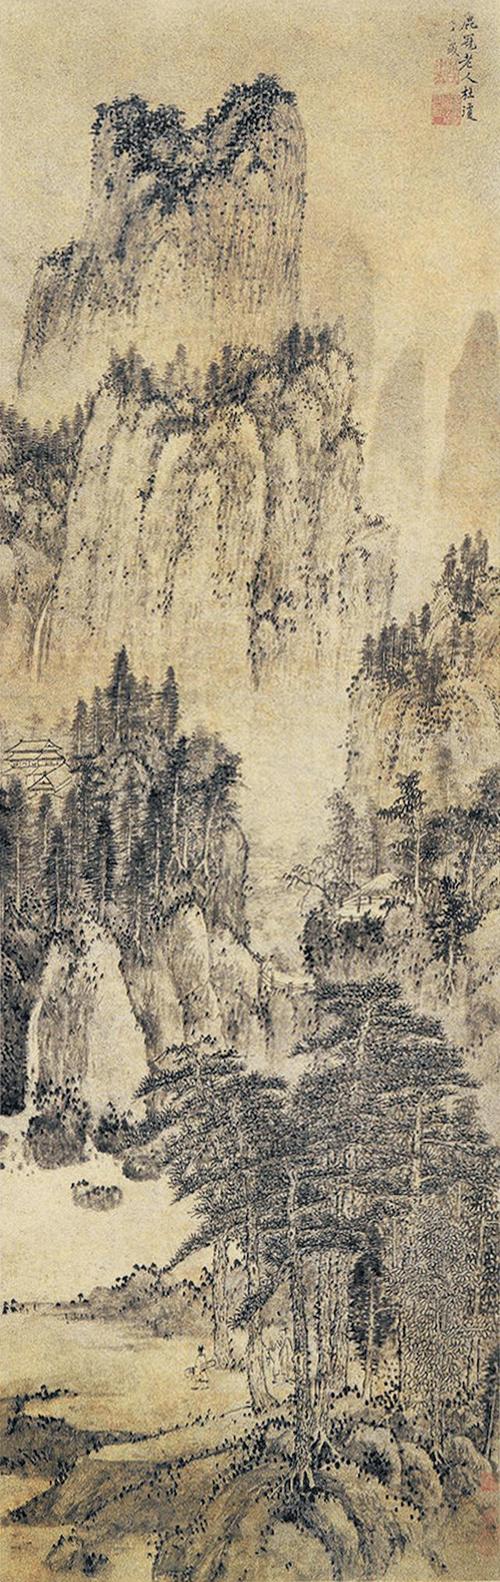 明代金润《溪山真赏图》卷为其传世绘画孤本.